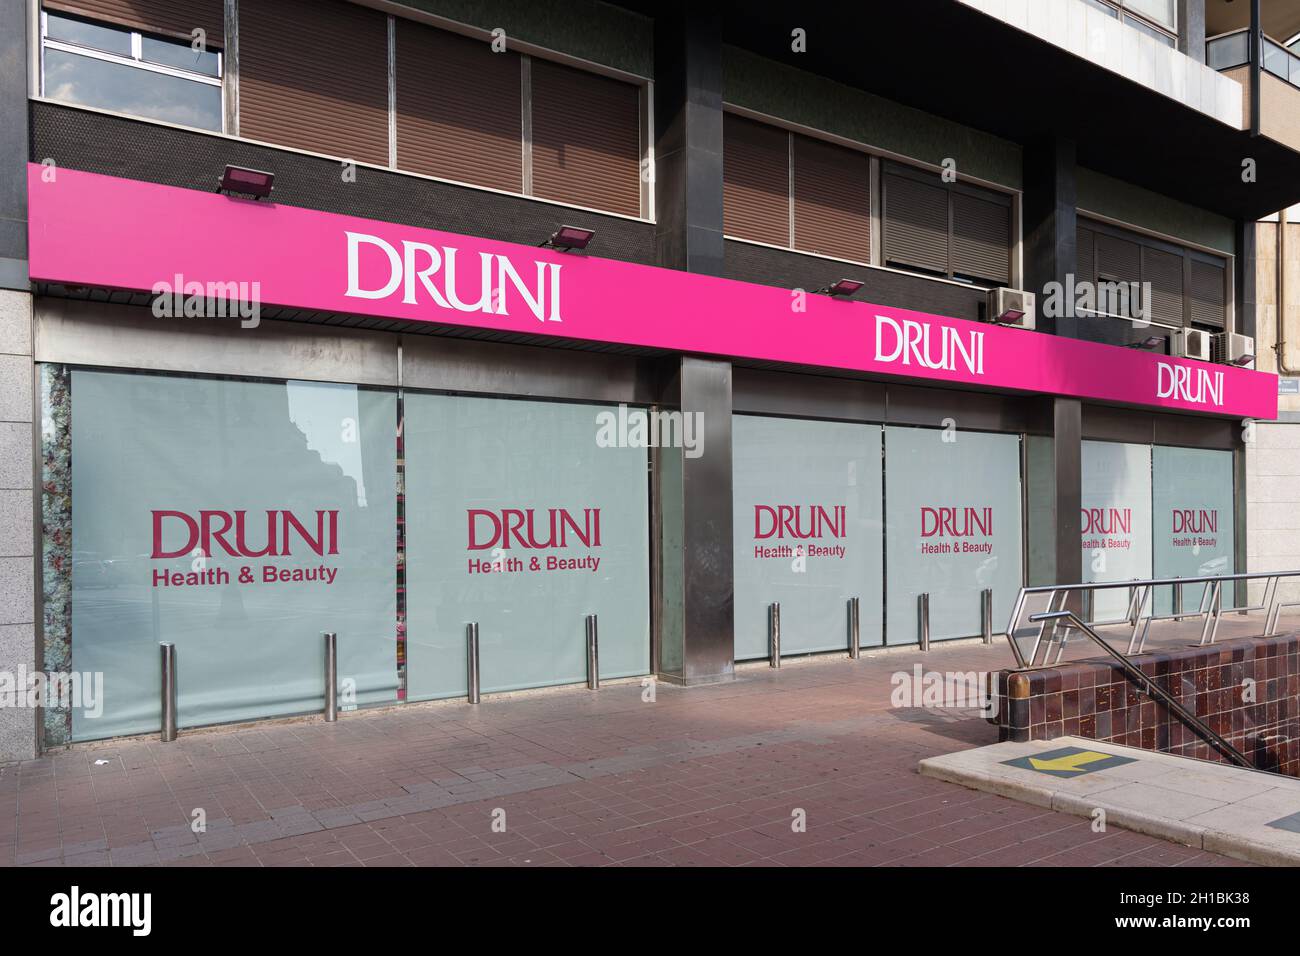 VALENCIA, SPANIEN - 14. OKTOBER 2021: Druni ist eine spanische Kette von Parfümerien, die sich auf Parfüms, Kosmetik, Make-up und Körperpflege spezialisiert hat Stockfoto